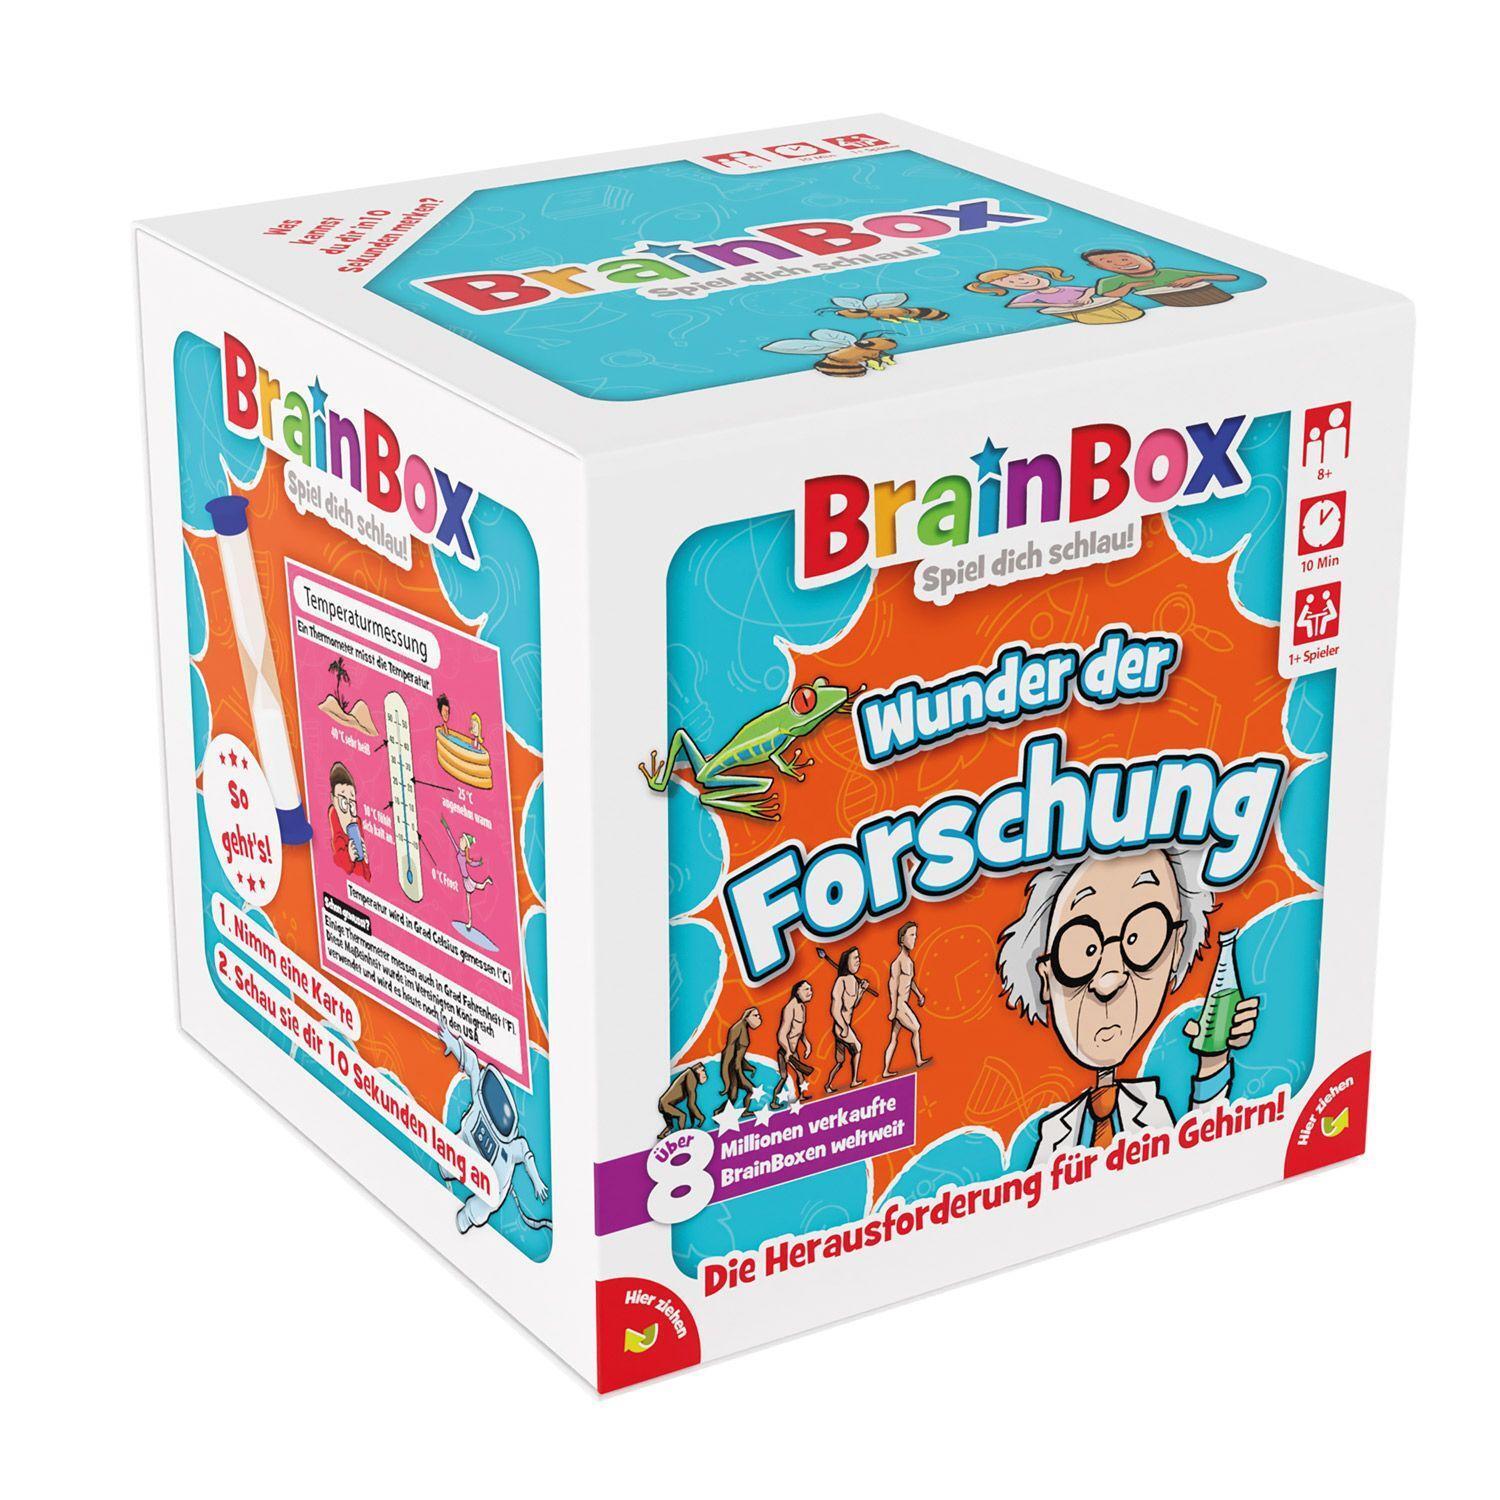 Bild: 5025822949431 | Brain Box - Wunder der Forschung | Brain Box | Spiel | Deutsch | 2024